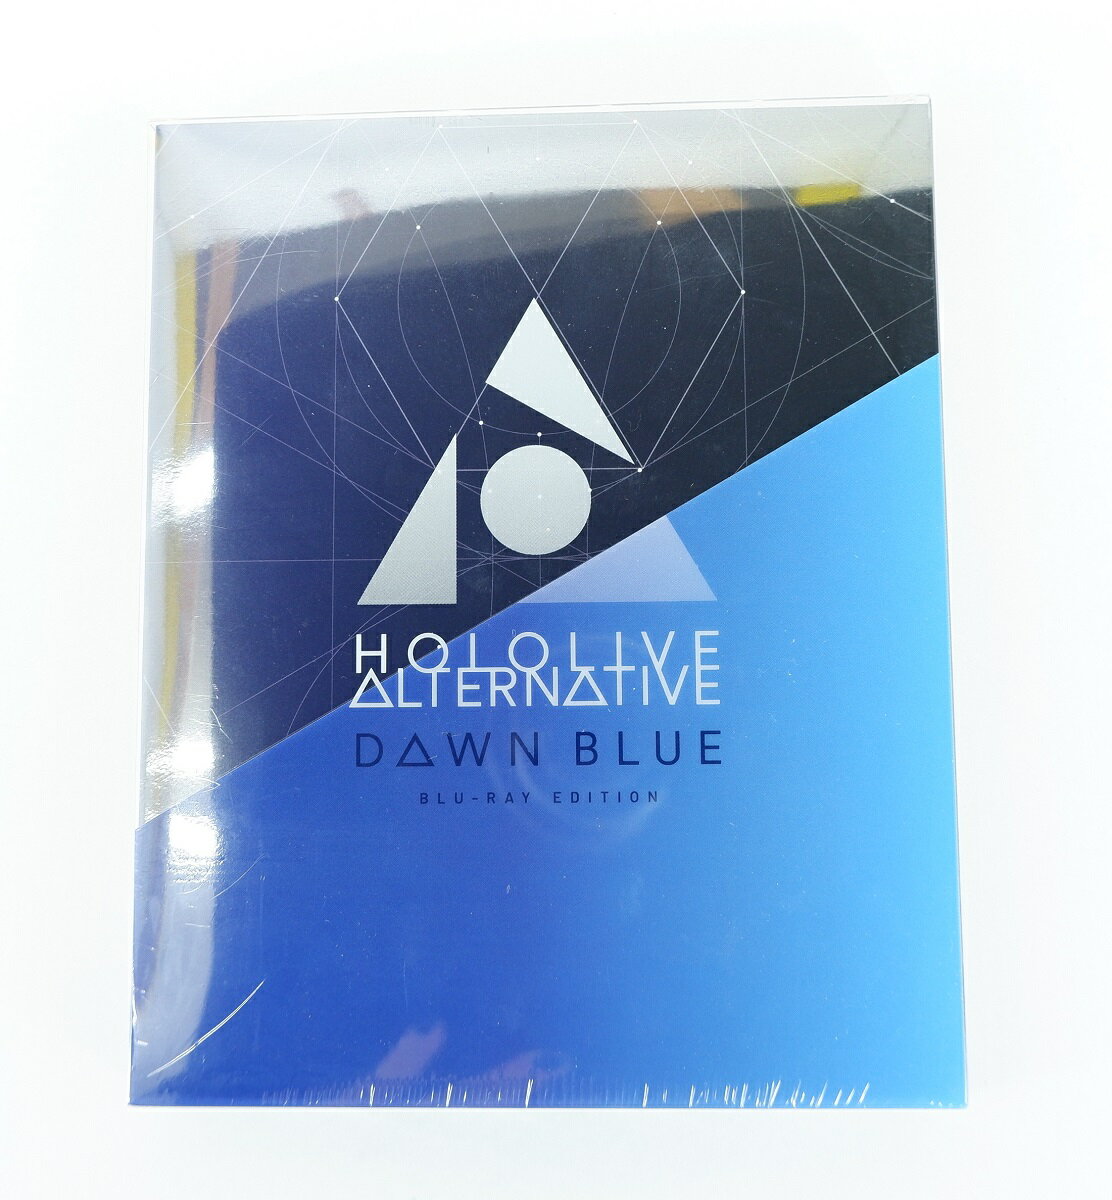 HOLOLIVE ALTERNATIVE DAWN BLUE Blu-ray EDITION 【Blu-ray】 【未開封】